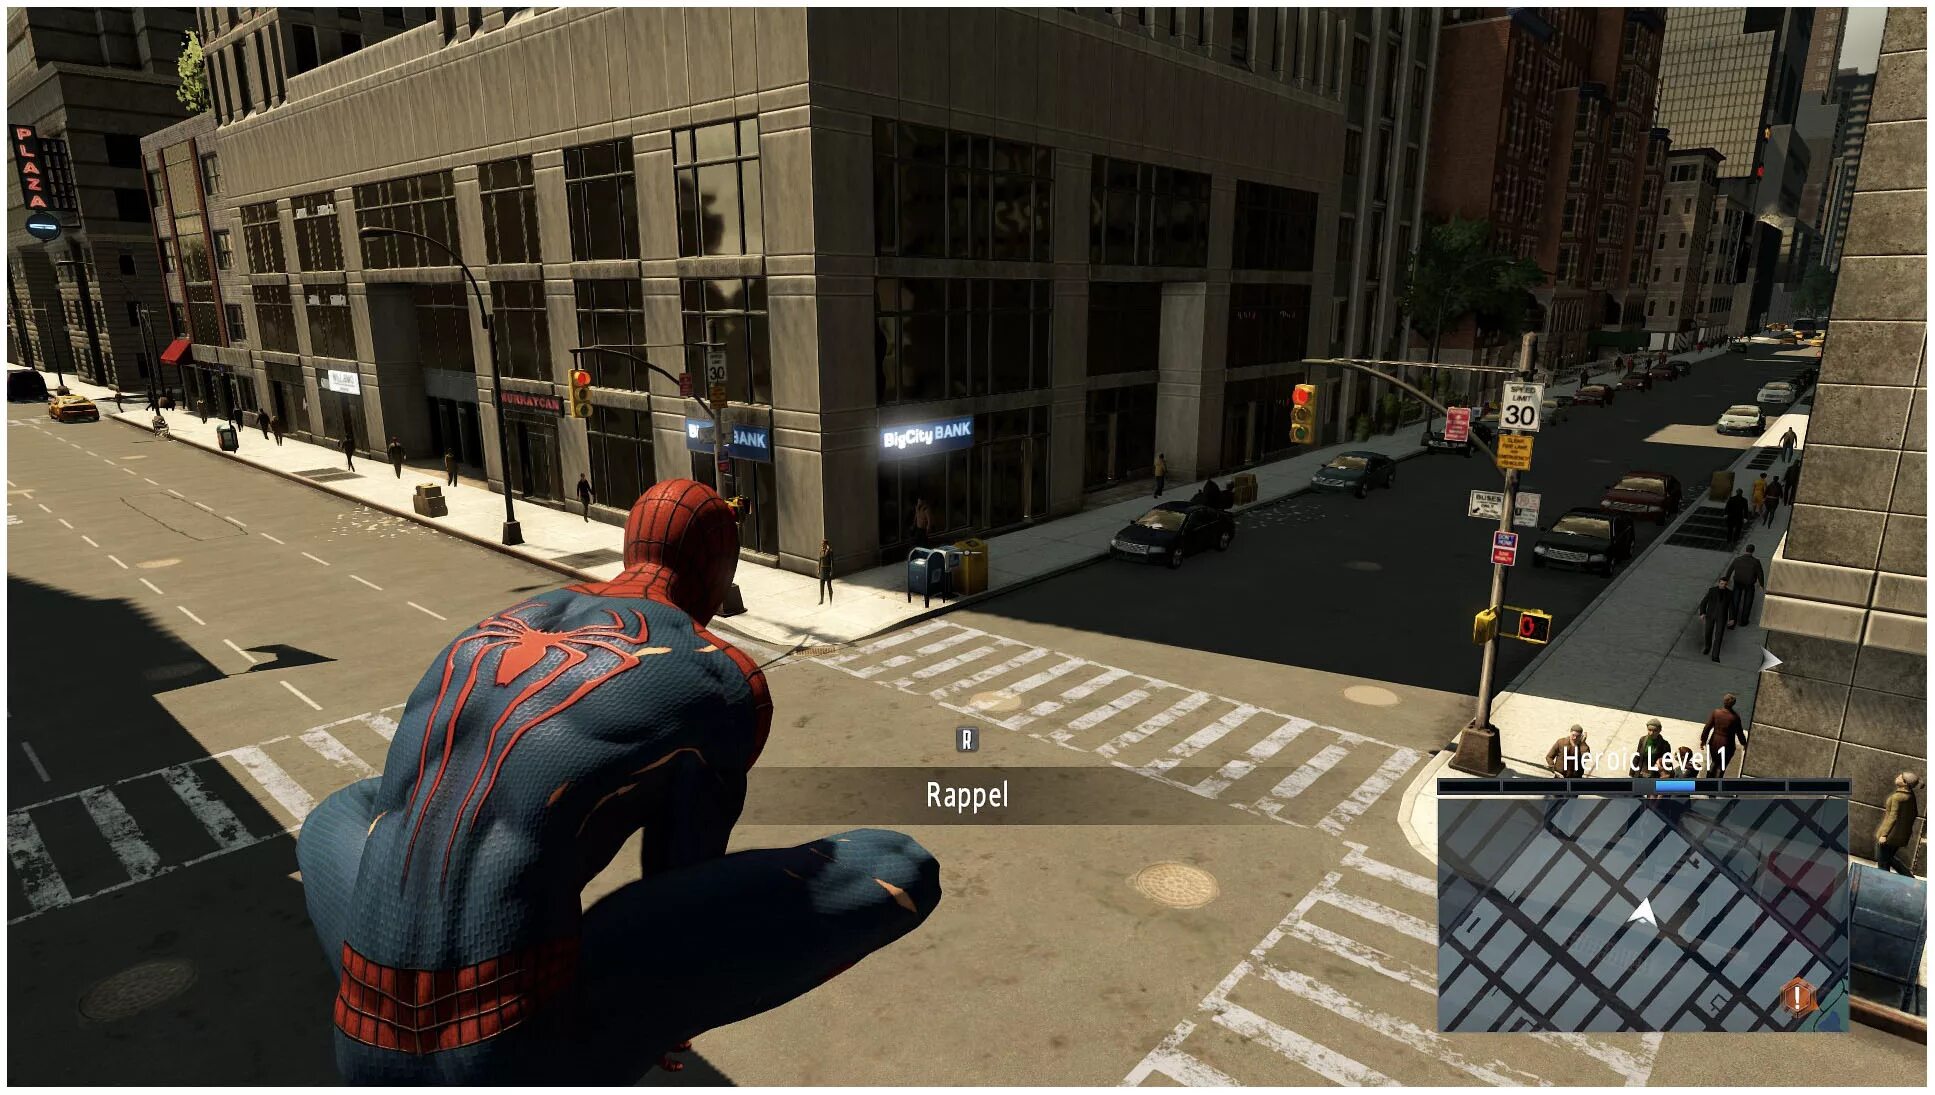 Игра навылет. Эмэйзинг Спайдер Мэн 2. The amazing Spider-man 2 (игра, 2014). Человек паук амазинг 2 игра. Эмэйзинг Спайдер Мэн игра.